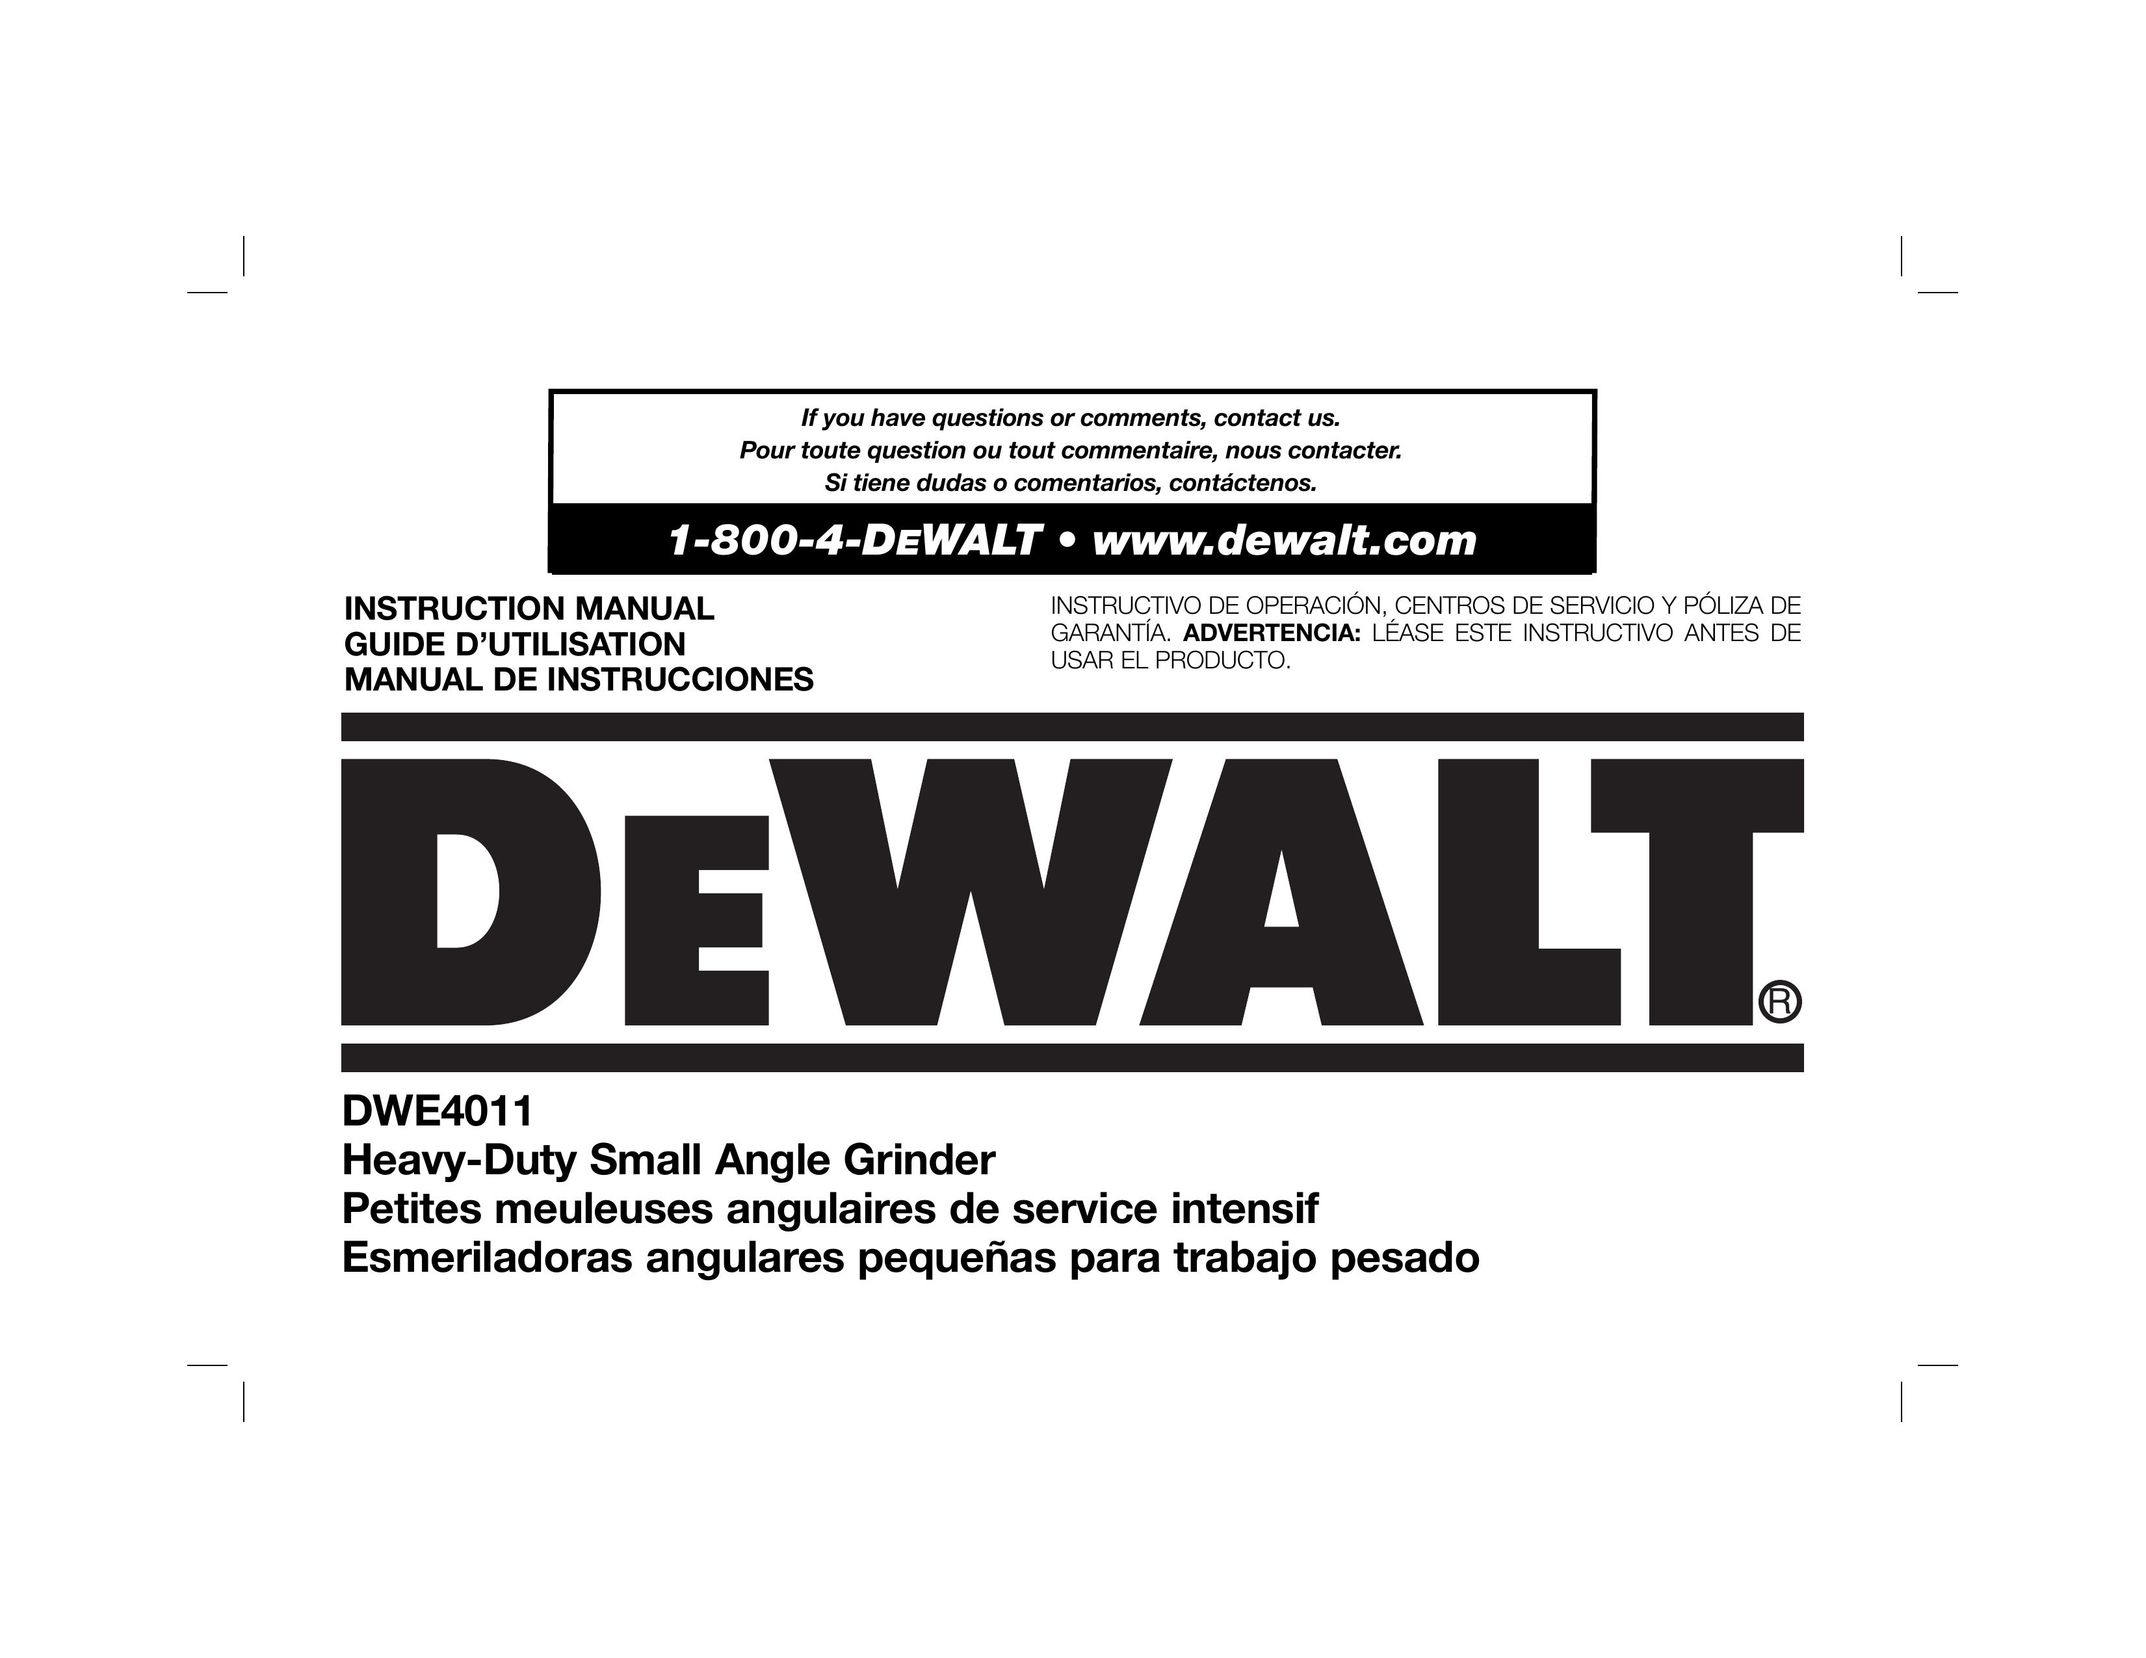 DeWalt DWE4011 Grinder User Manual